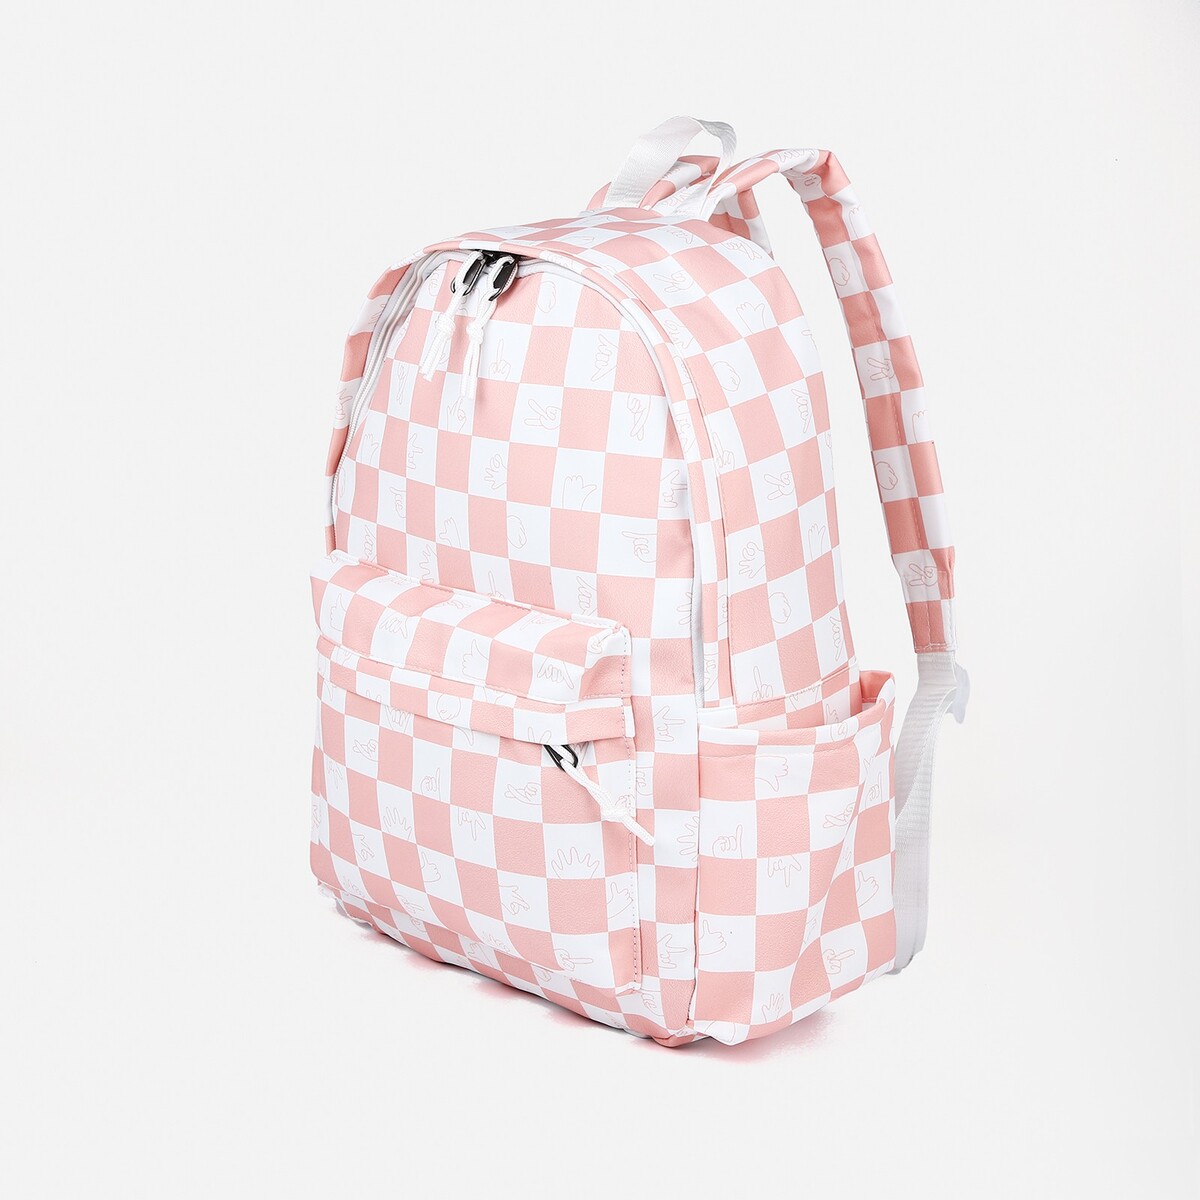 Рюкзак молодежный из текстиля, 4 кармана, цвет белый/розовый рюкзак молодежный из текстиля 4 кармана белый розовый